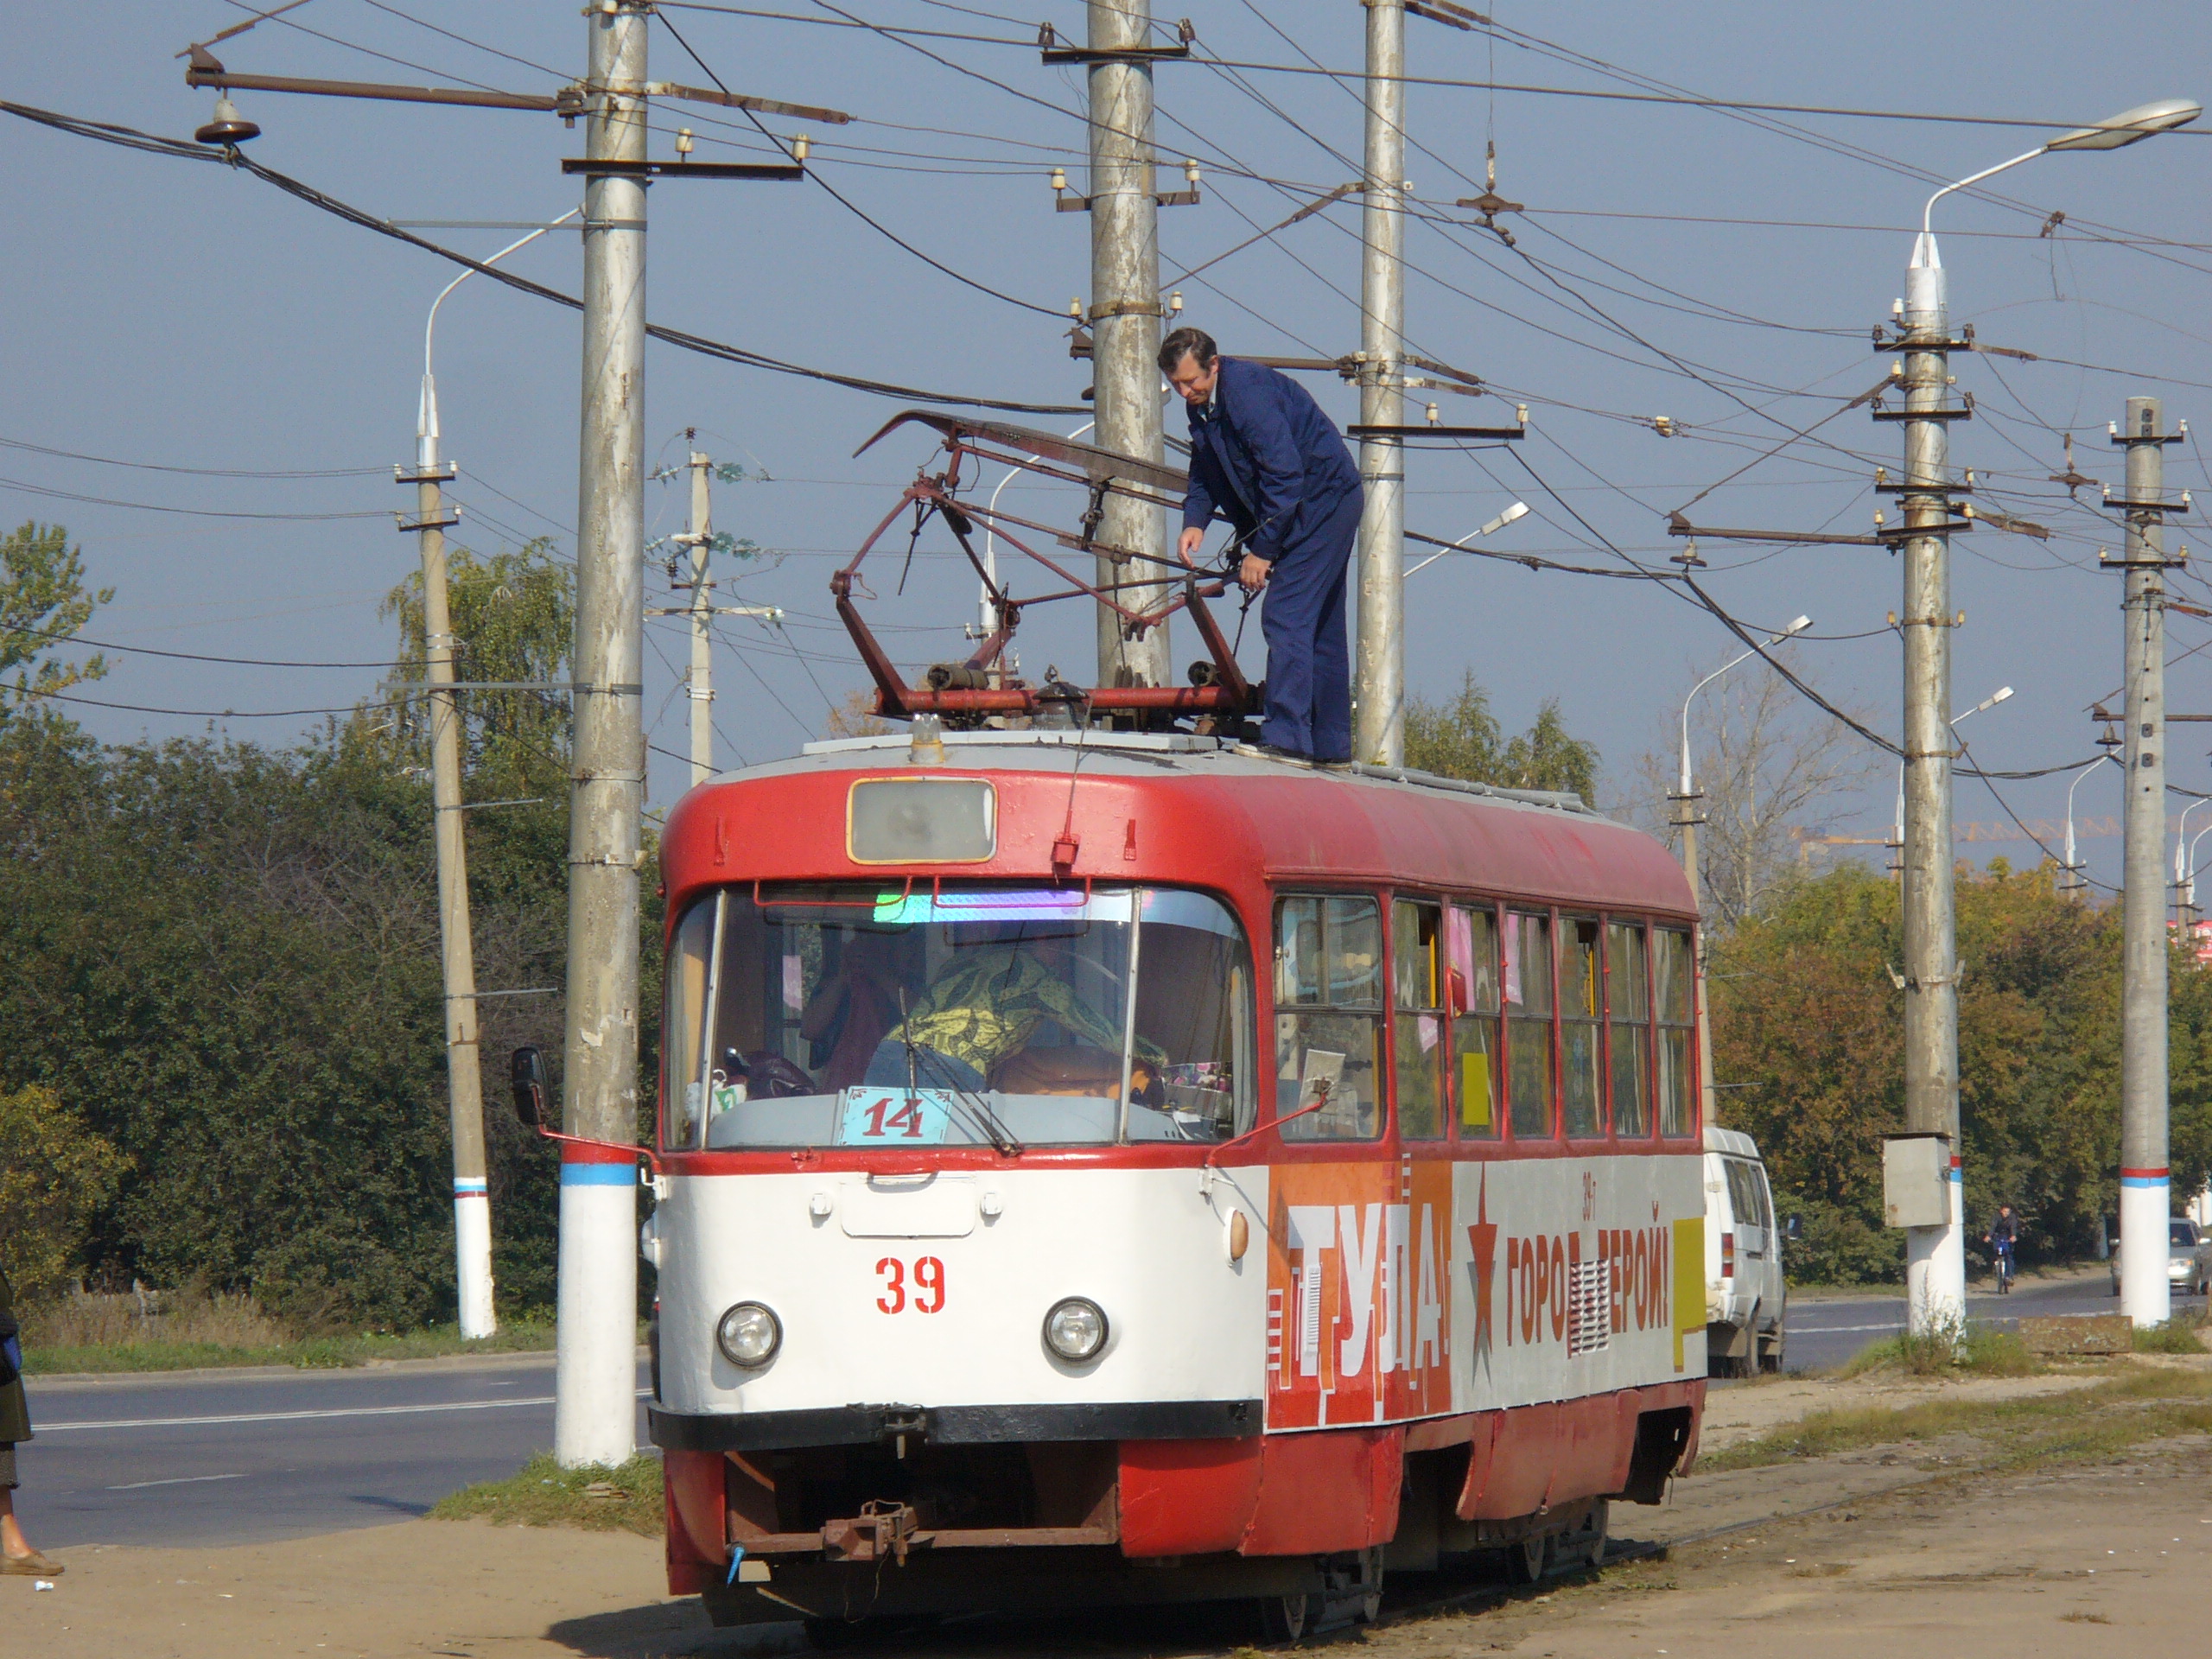 Трамвай Tatra T3 39, ремонтник залез на крышу и чинит пантограф